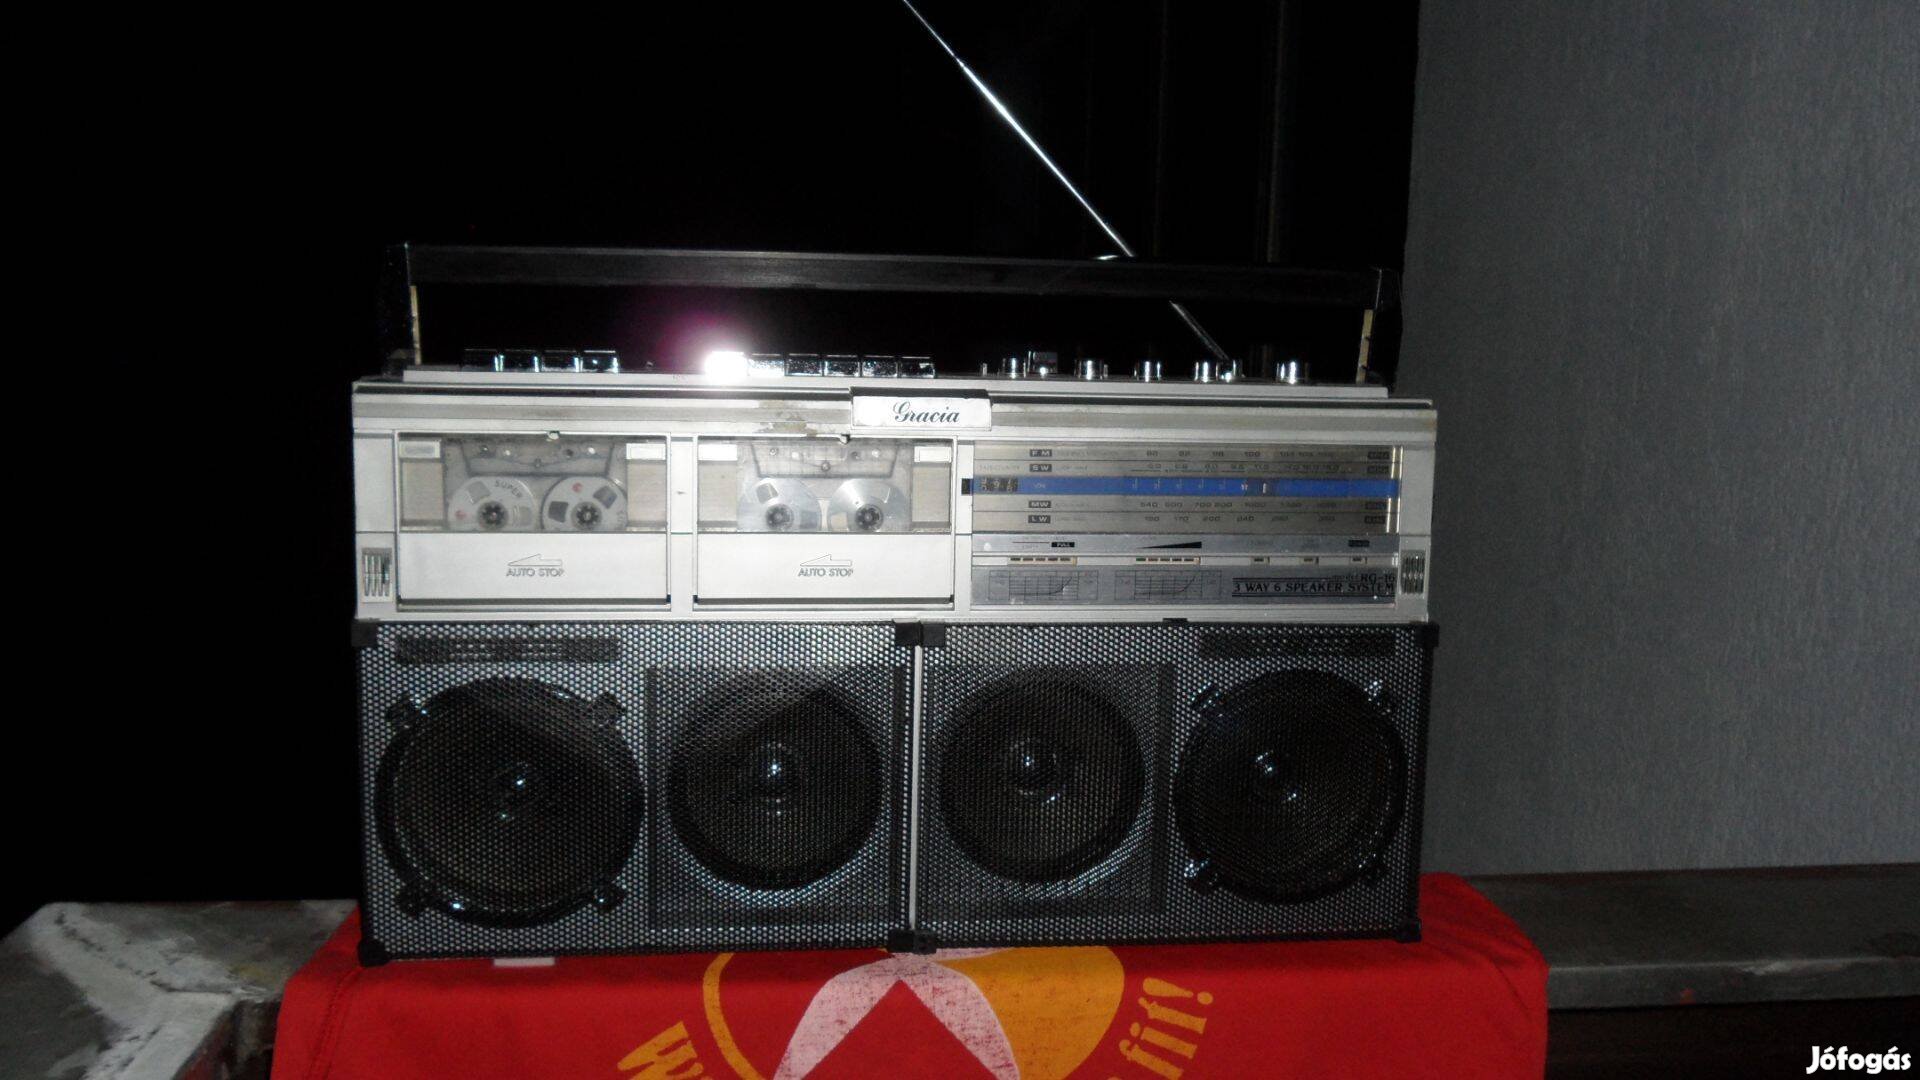 Vintage rádiós "boombox" 2 kazettás csúcs készülék mint Sharp GF 777